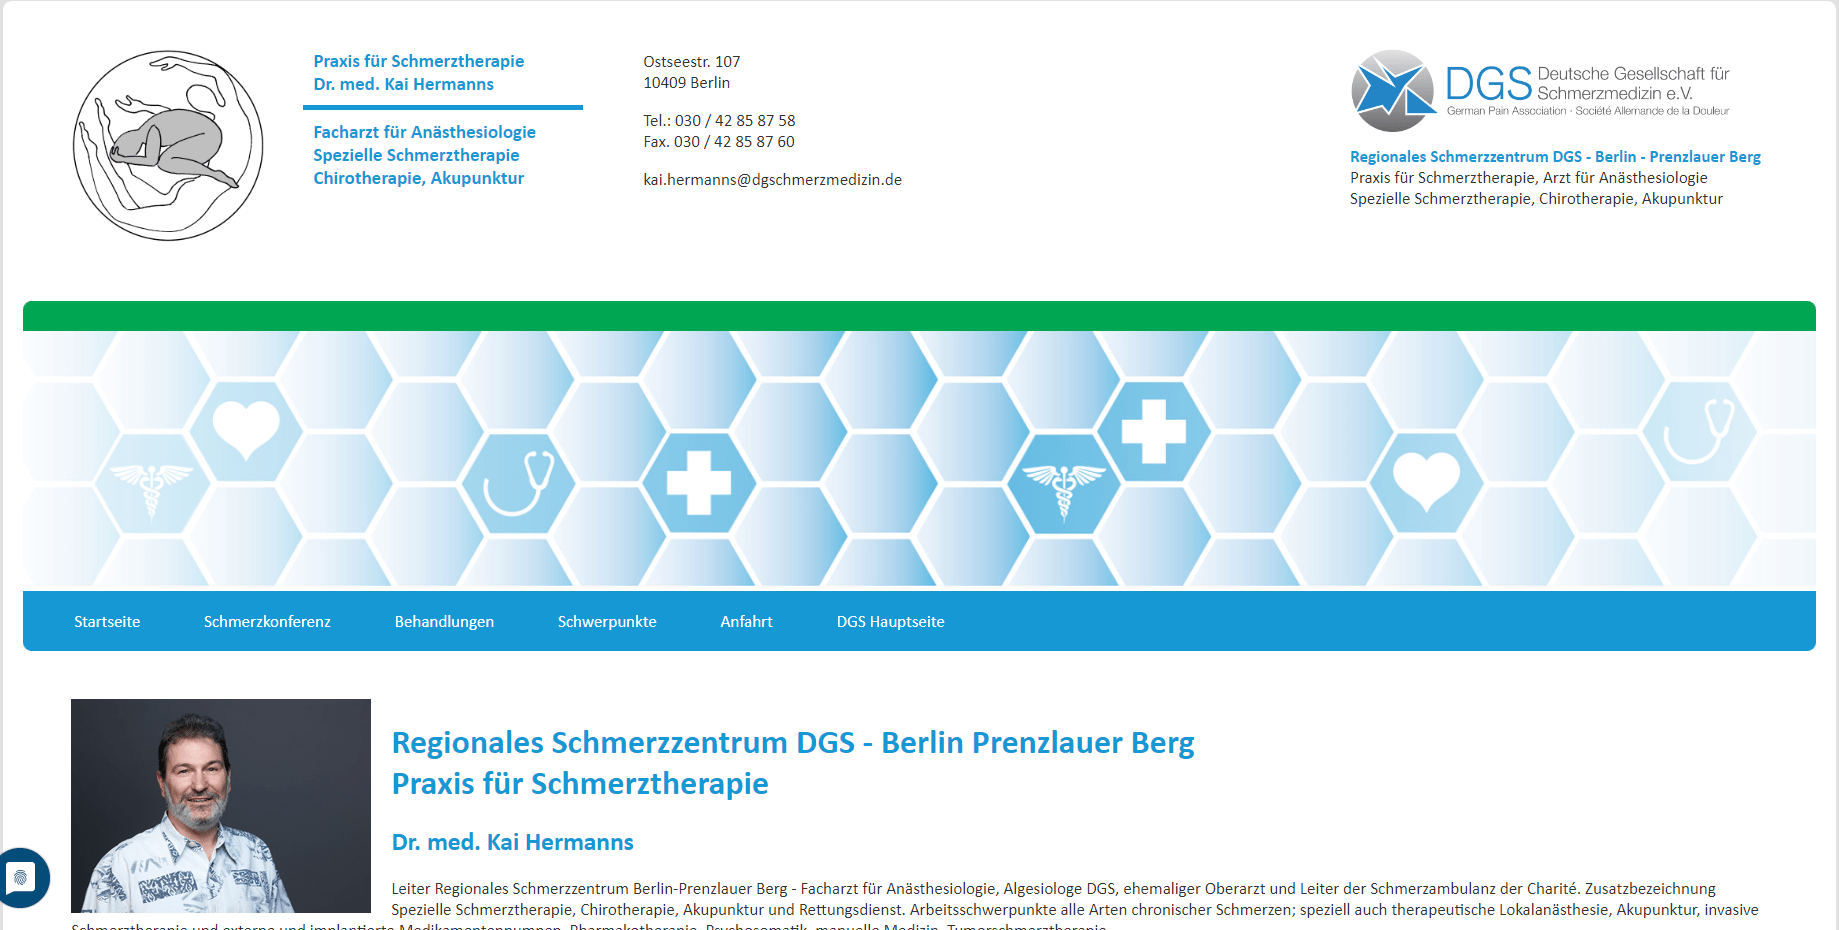 Referenz Deutsche Gesellschaft für Schmerzmedizin - Webdesign by AOS Hamburg